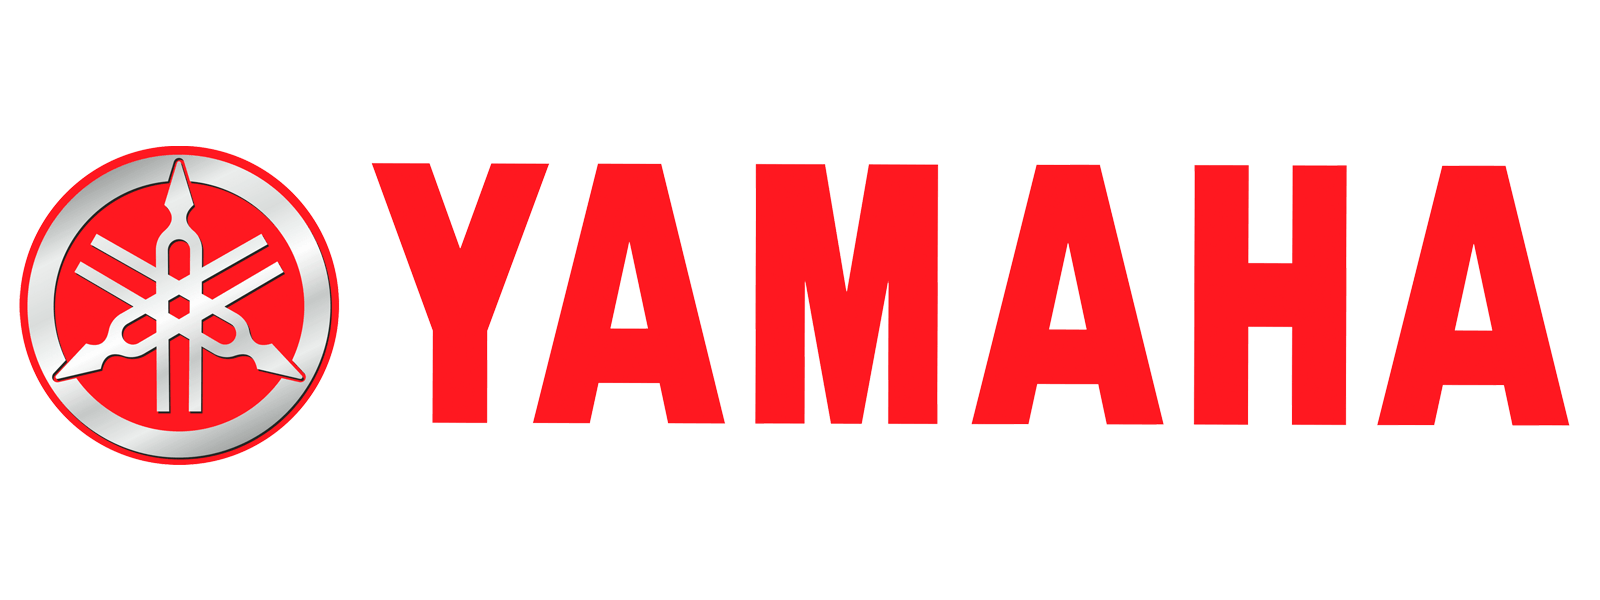 Yamha Logo - Yamaha logo | Motorcycle brands: logo, specs, history.